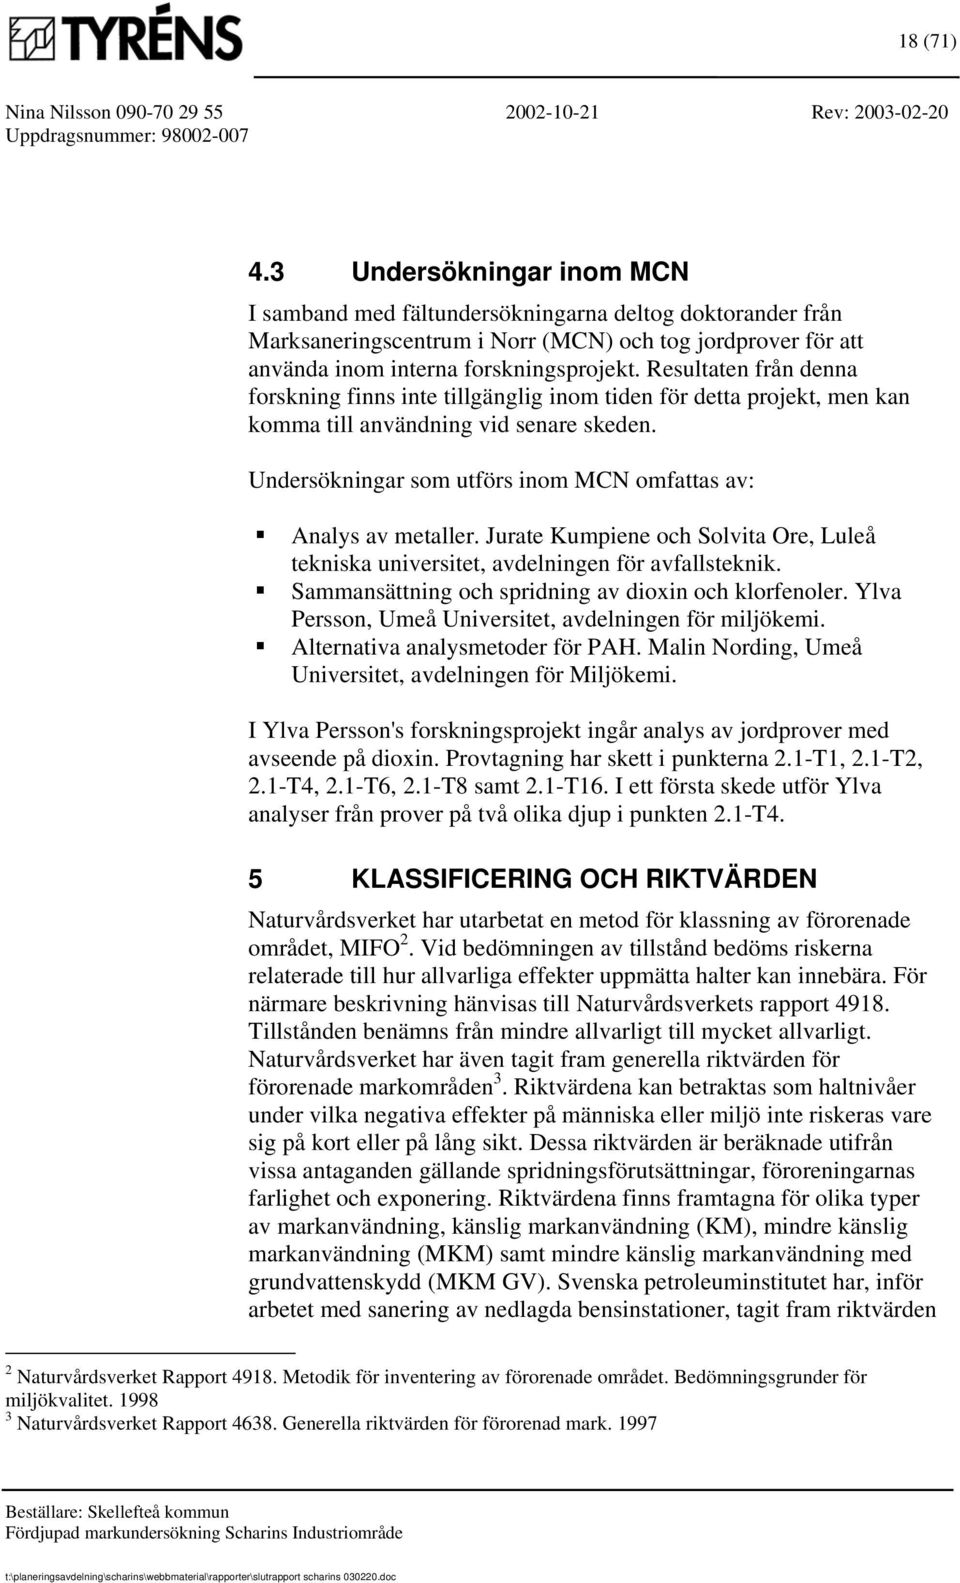 Undersökningar som utförs inom MCN omfattas av: Analys av metaller. Jurate Kumpiene och Solvita Ore, Luleå tekniska universitet, avdelningen för avfallsteknik.